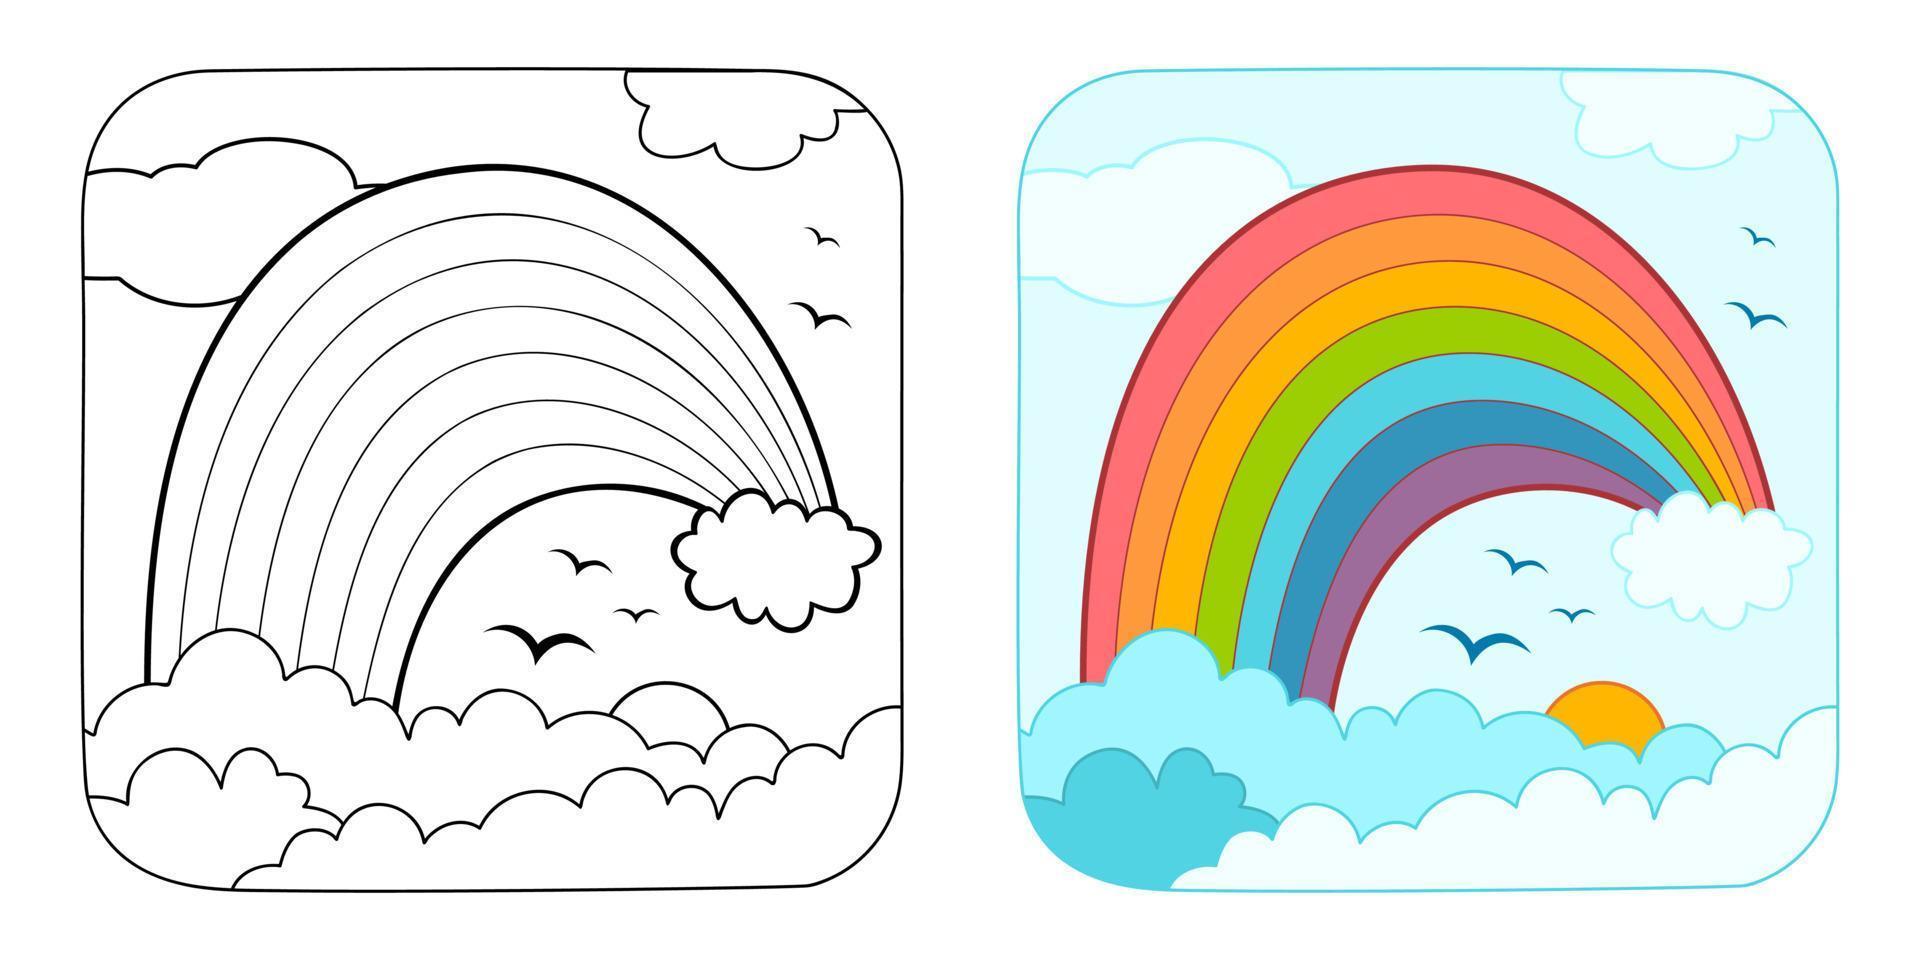 livre de coloriage ou page de coloriage pour les enfants. clipart d'illustration vectorielle arc-en-ciel. fond naturel. vecteur